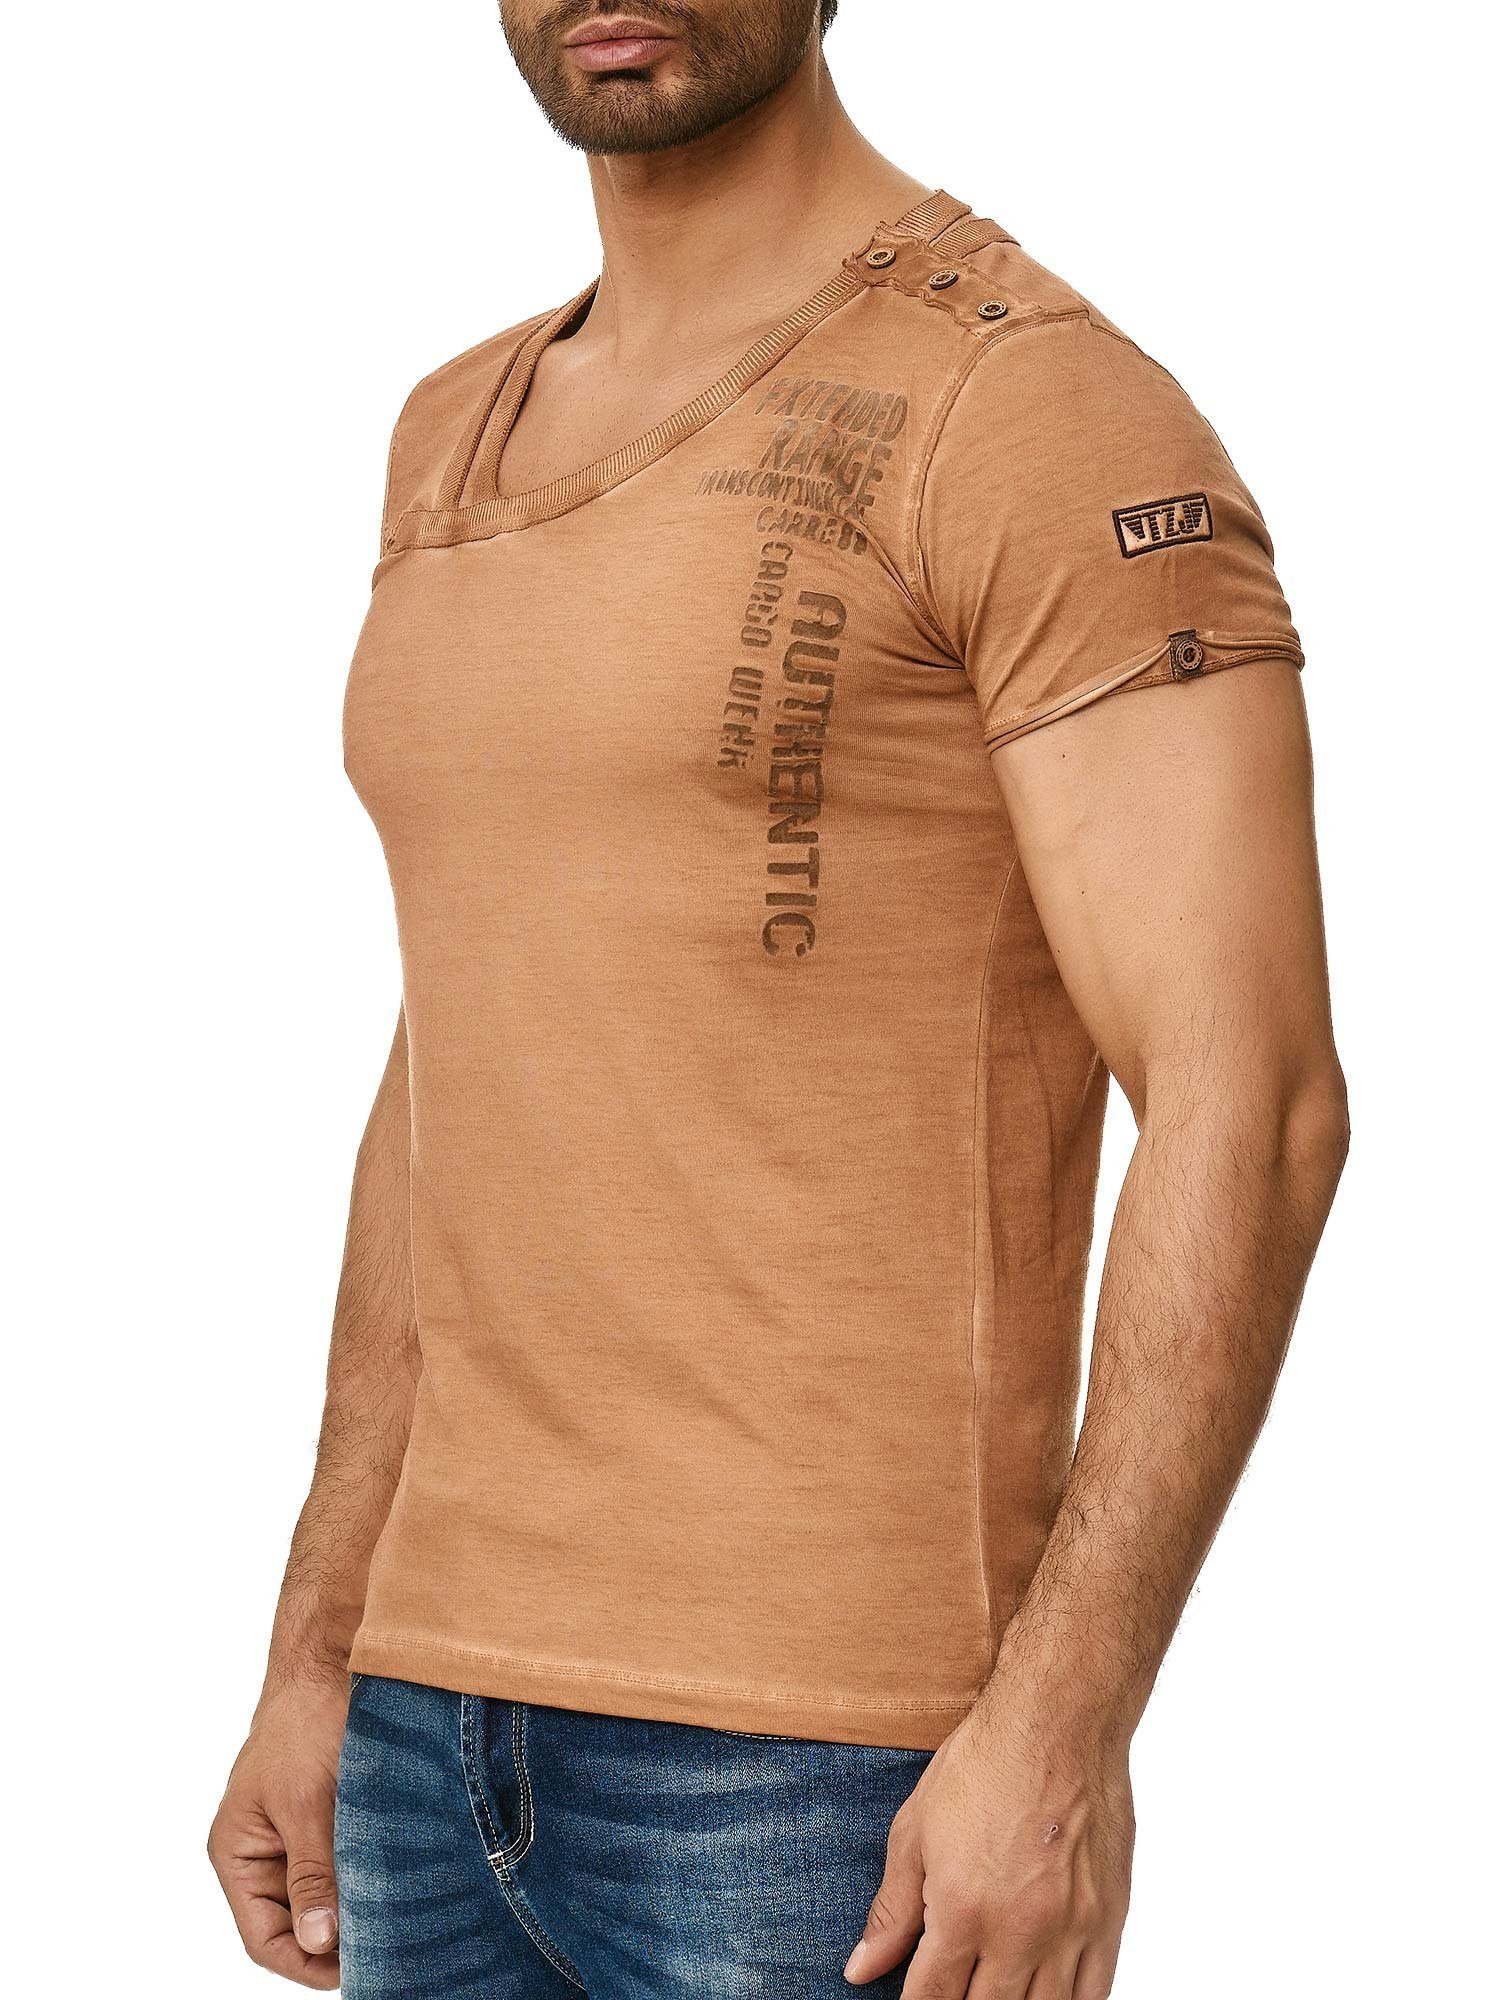 Tazzio T-Shirt 4022 in trendiger Ölwaschung mit stylischem Kragen und Knopfleiste an der Schulter camel